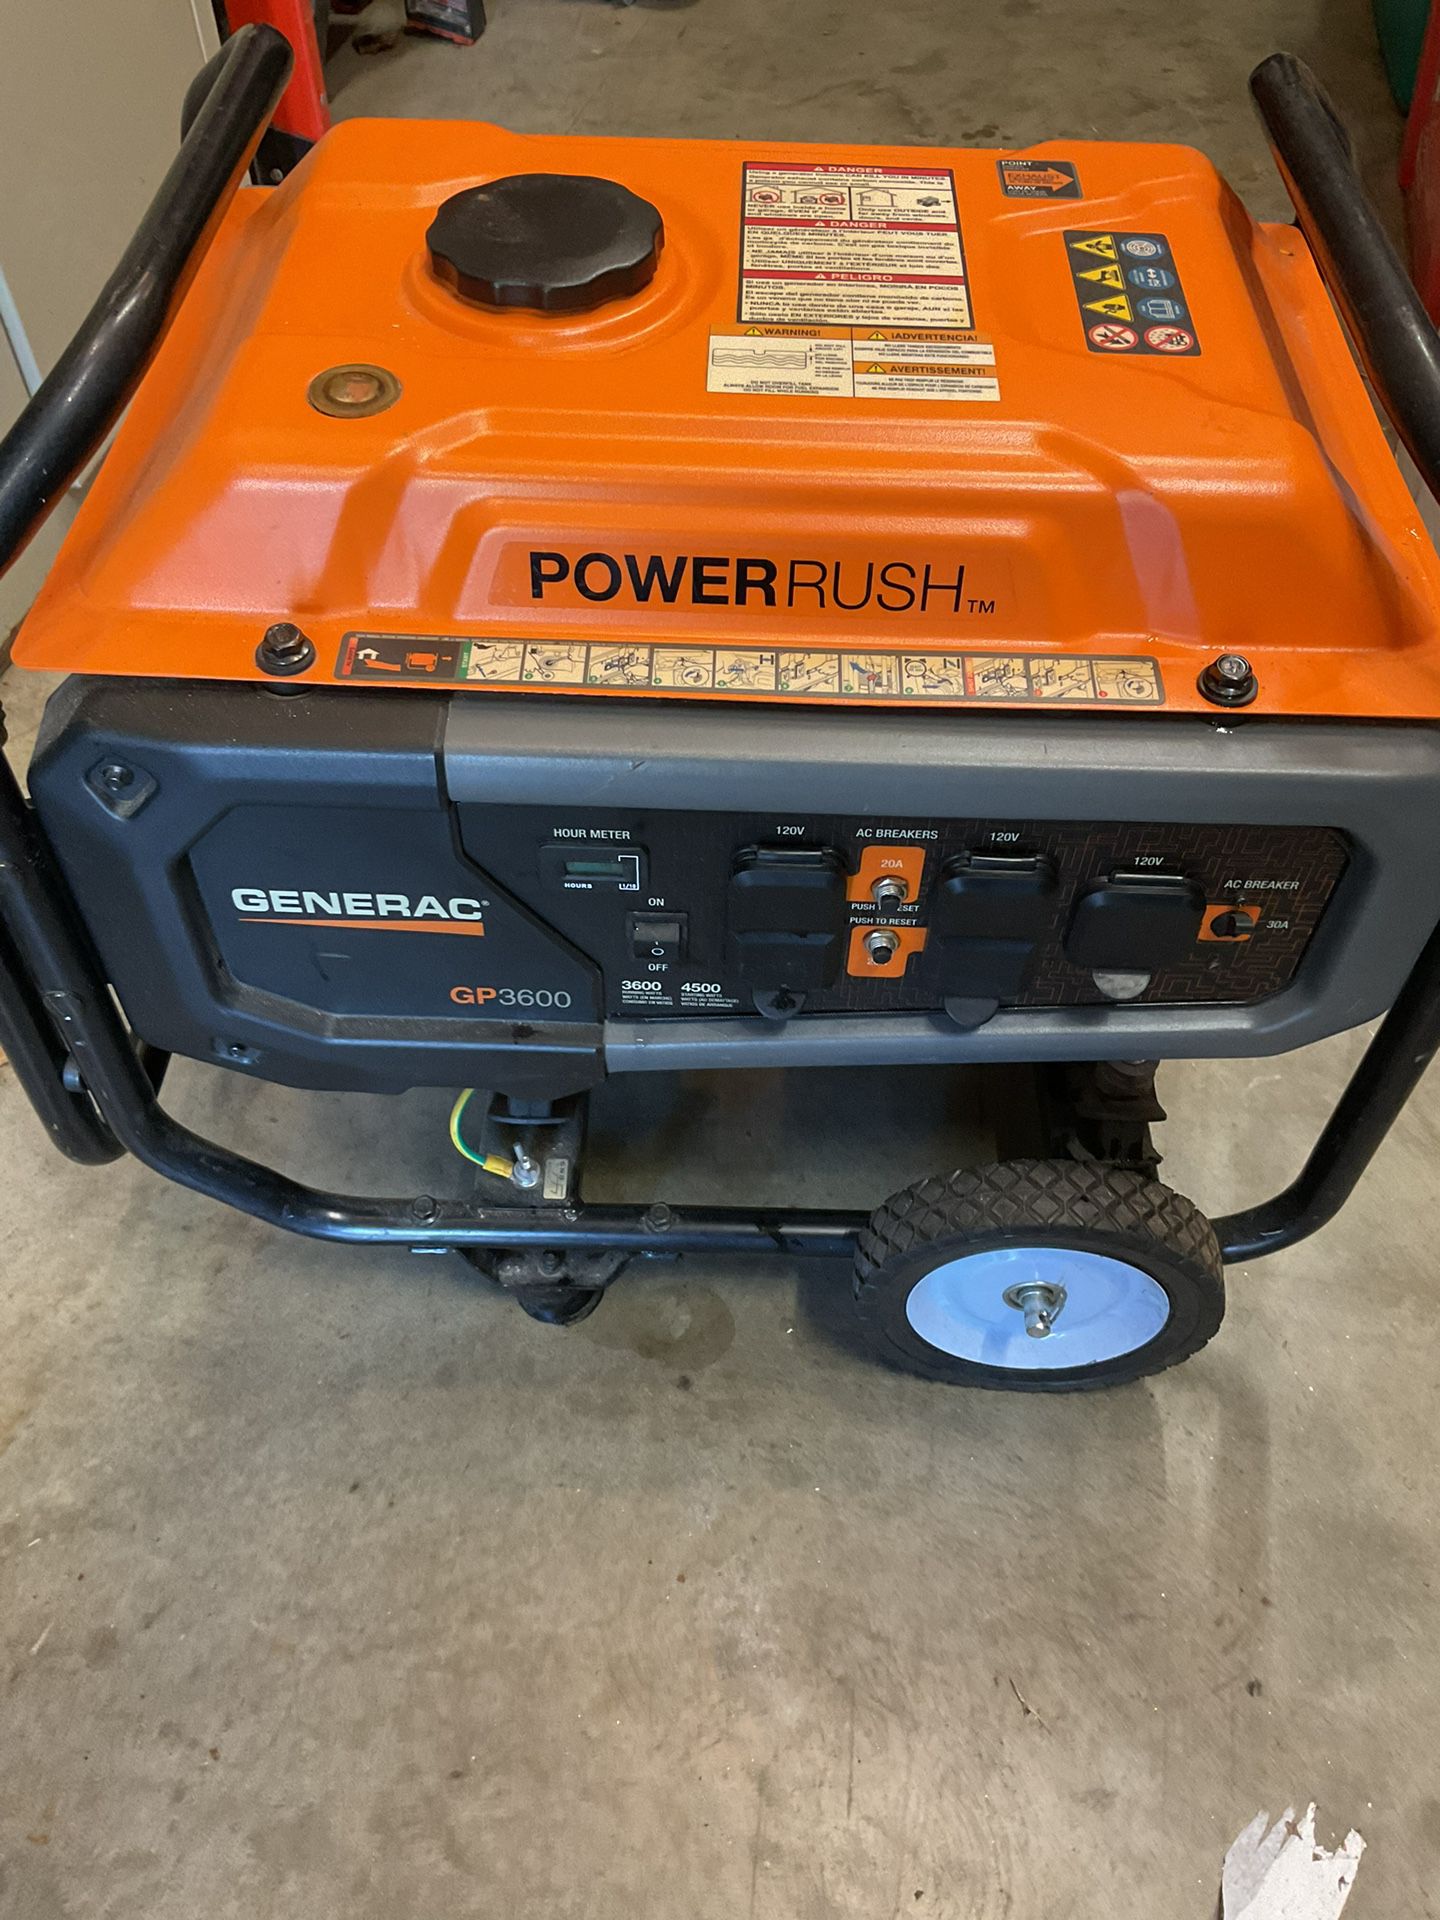 Generac Power Rush Generator